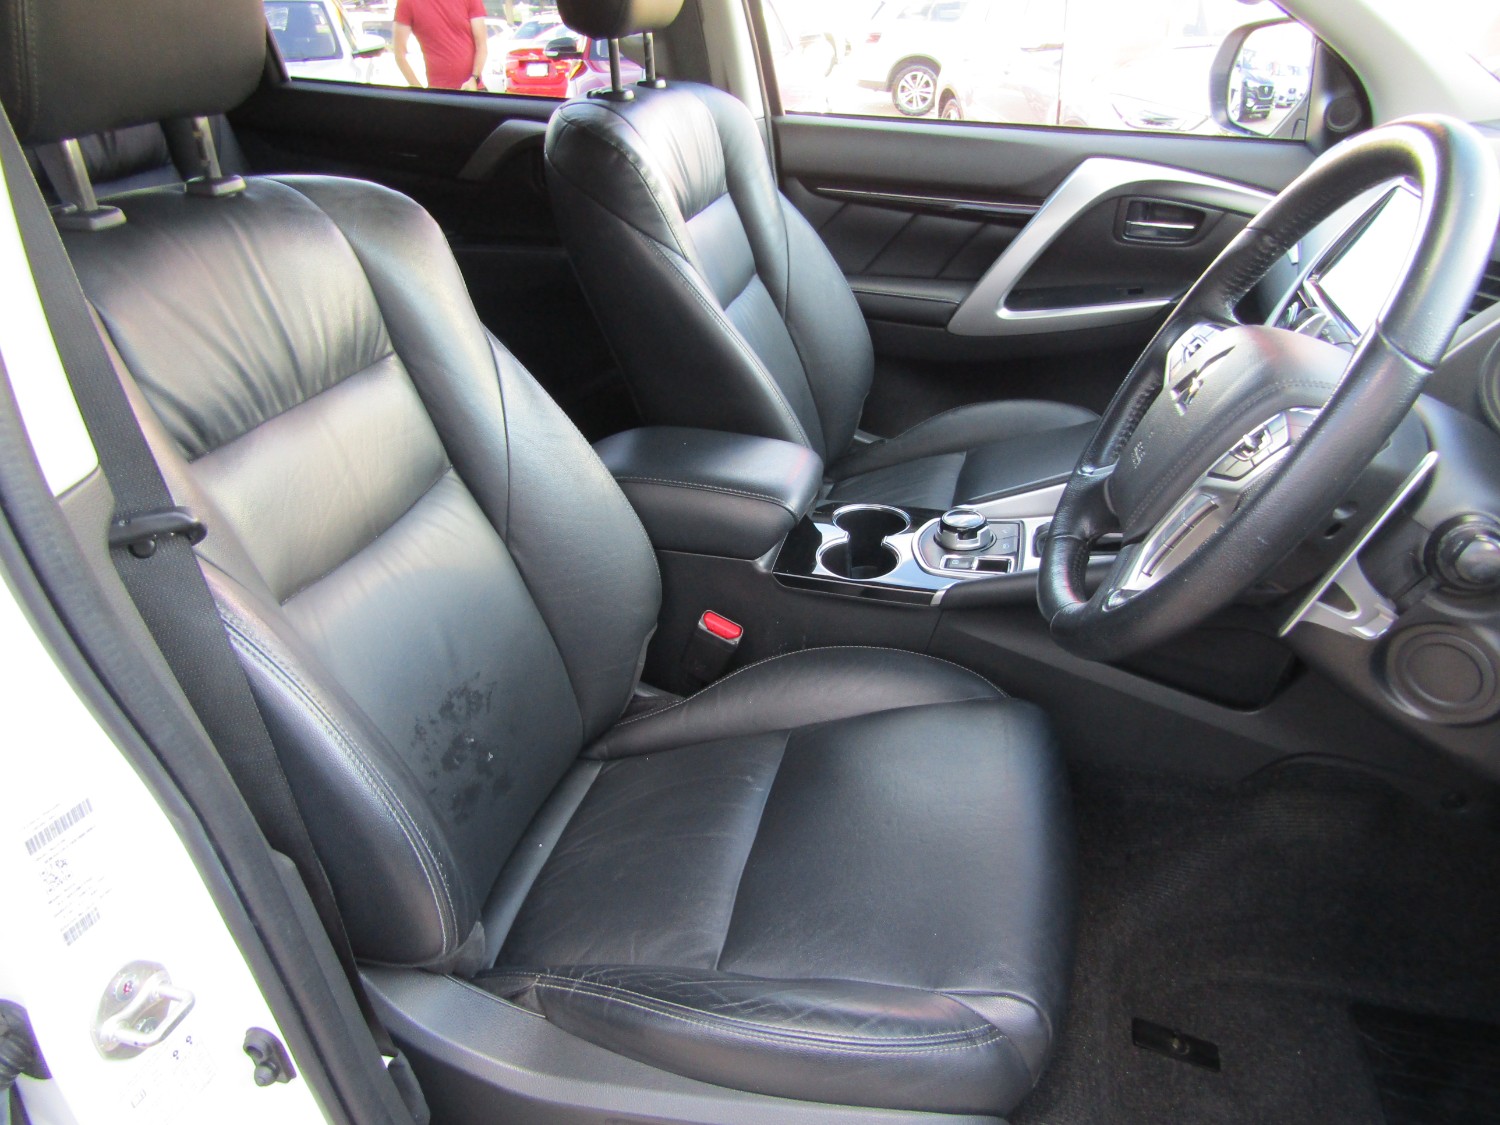 2018 MY19 Mitsubishi Pajero Sport QE Black Edition Wagon Image 14